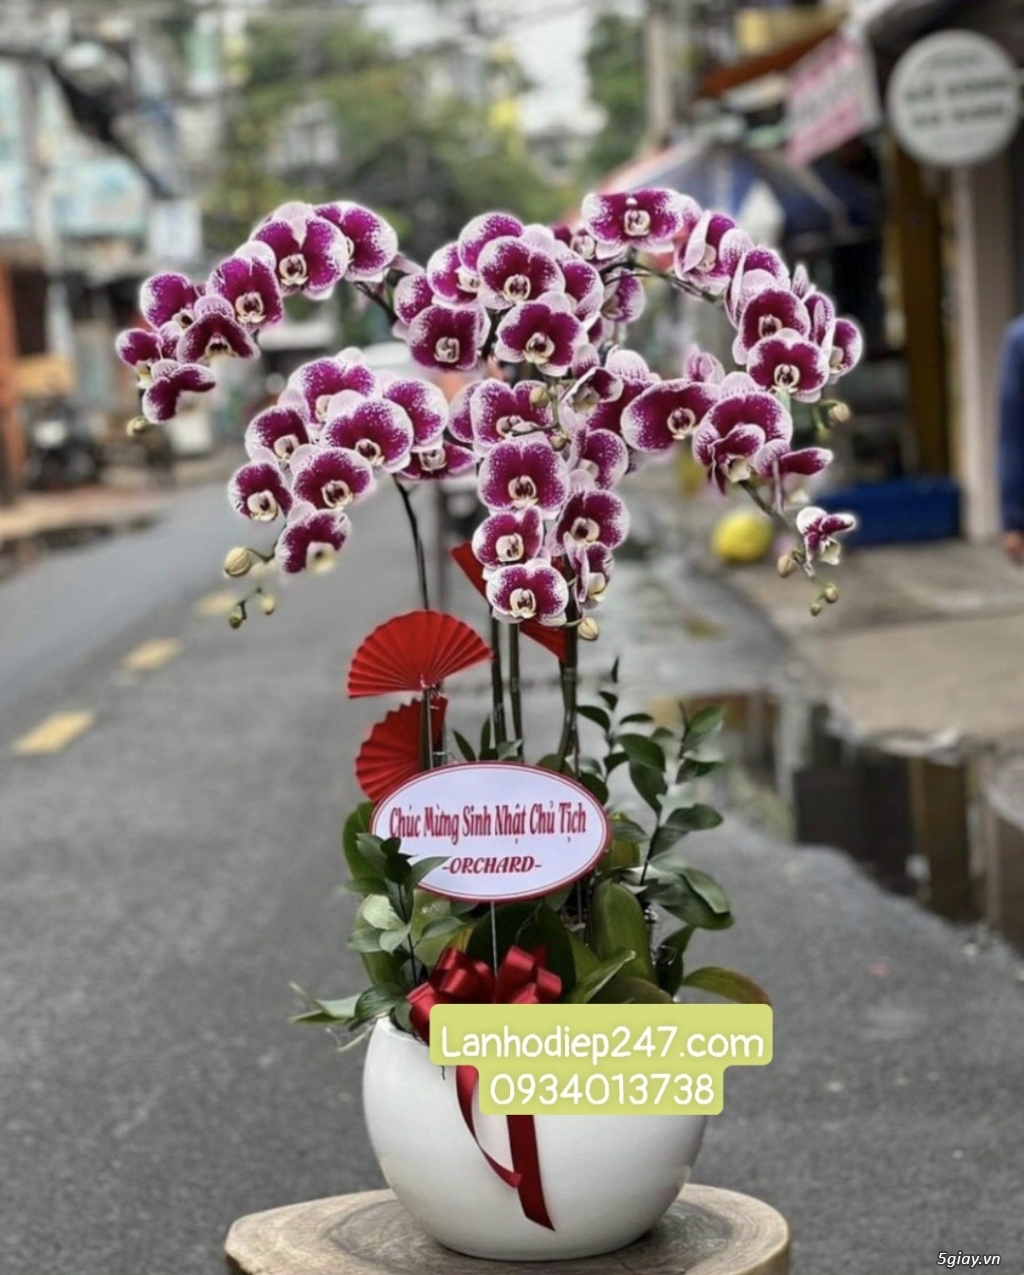 Shop hoa tươi 247 chuyên cung cấp lan hồ điệp tại tphcm 0934013738 - 2